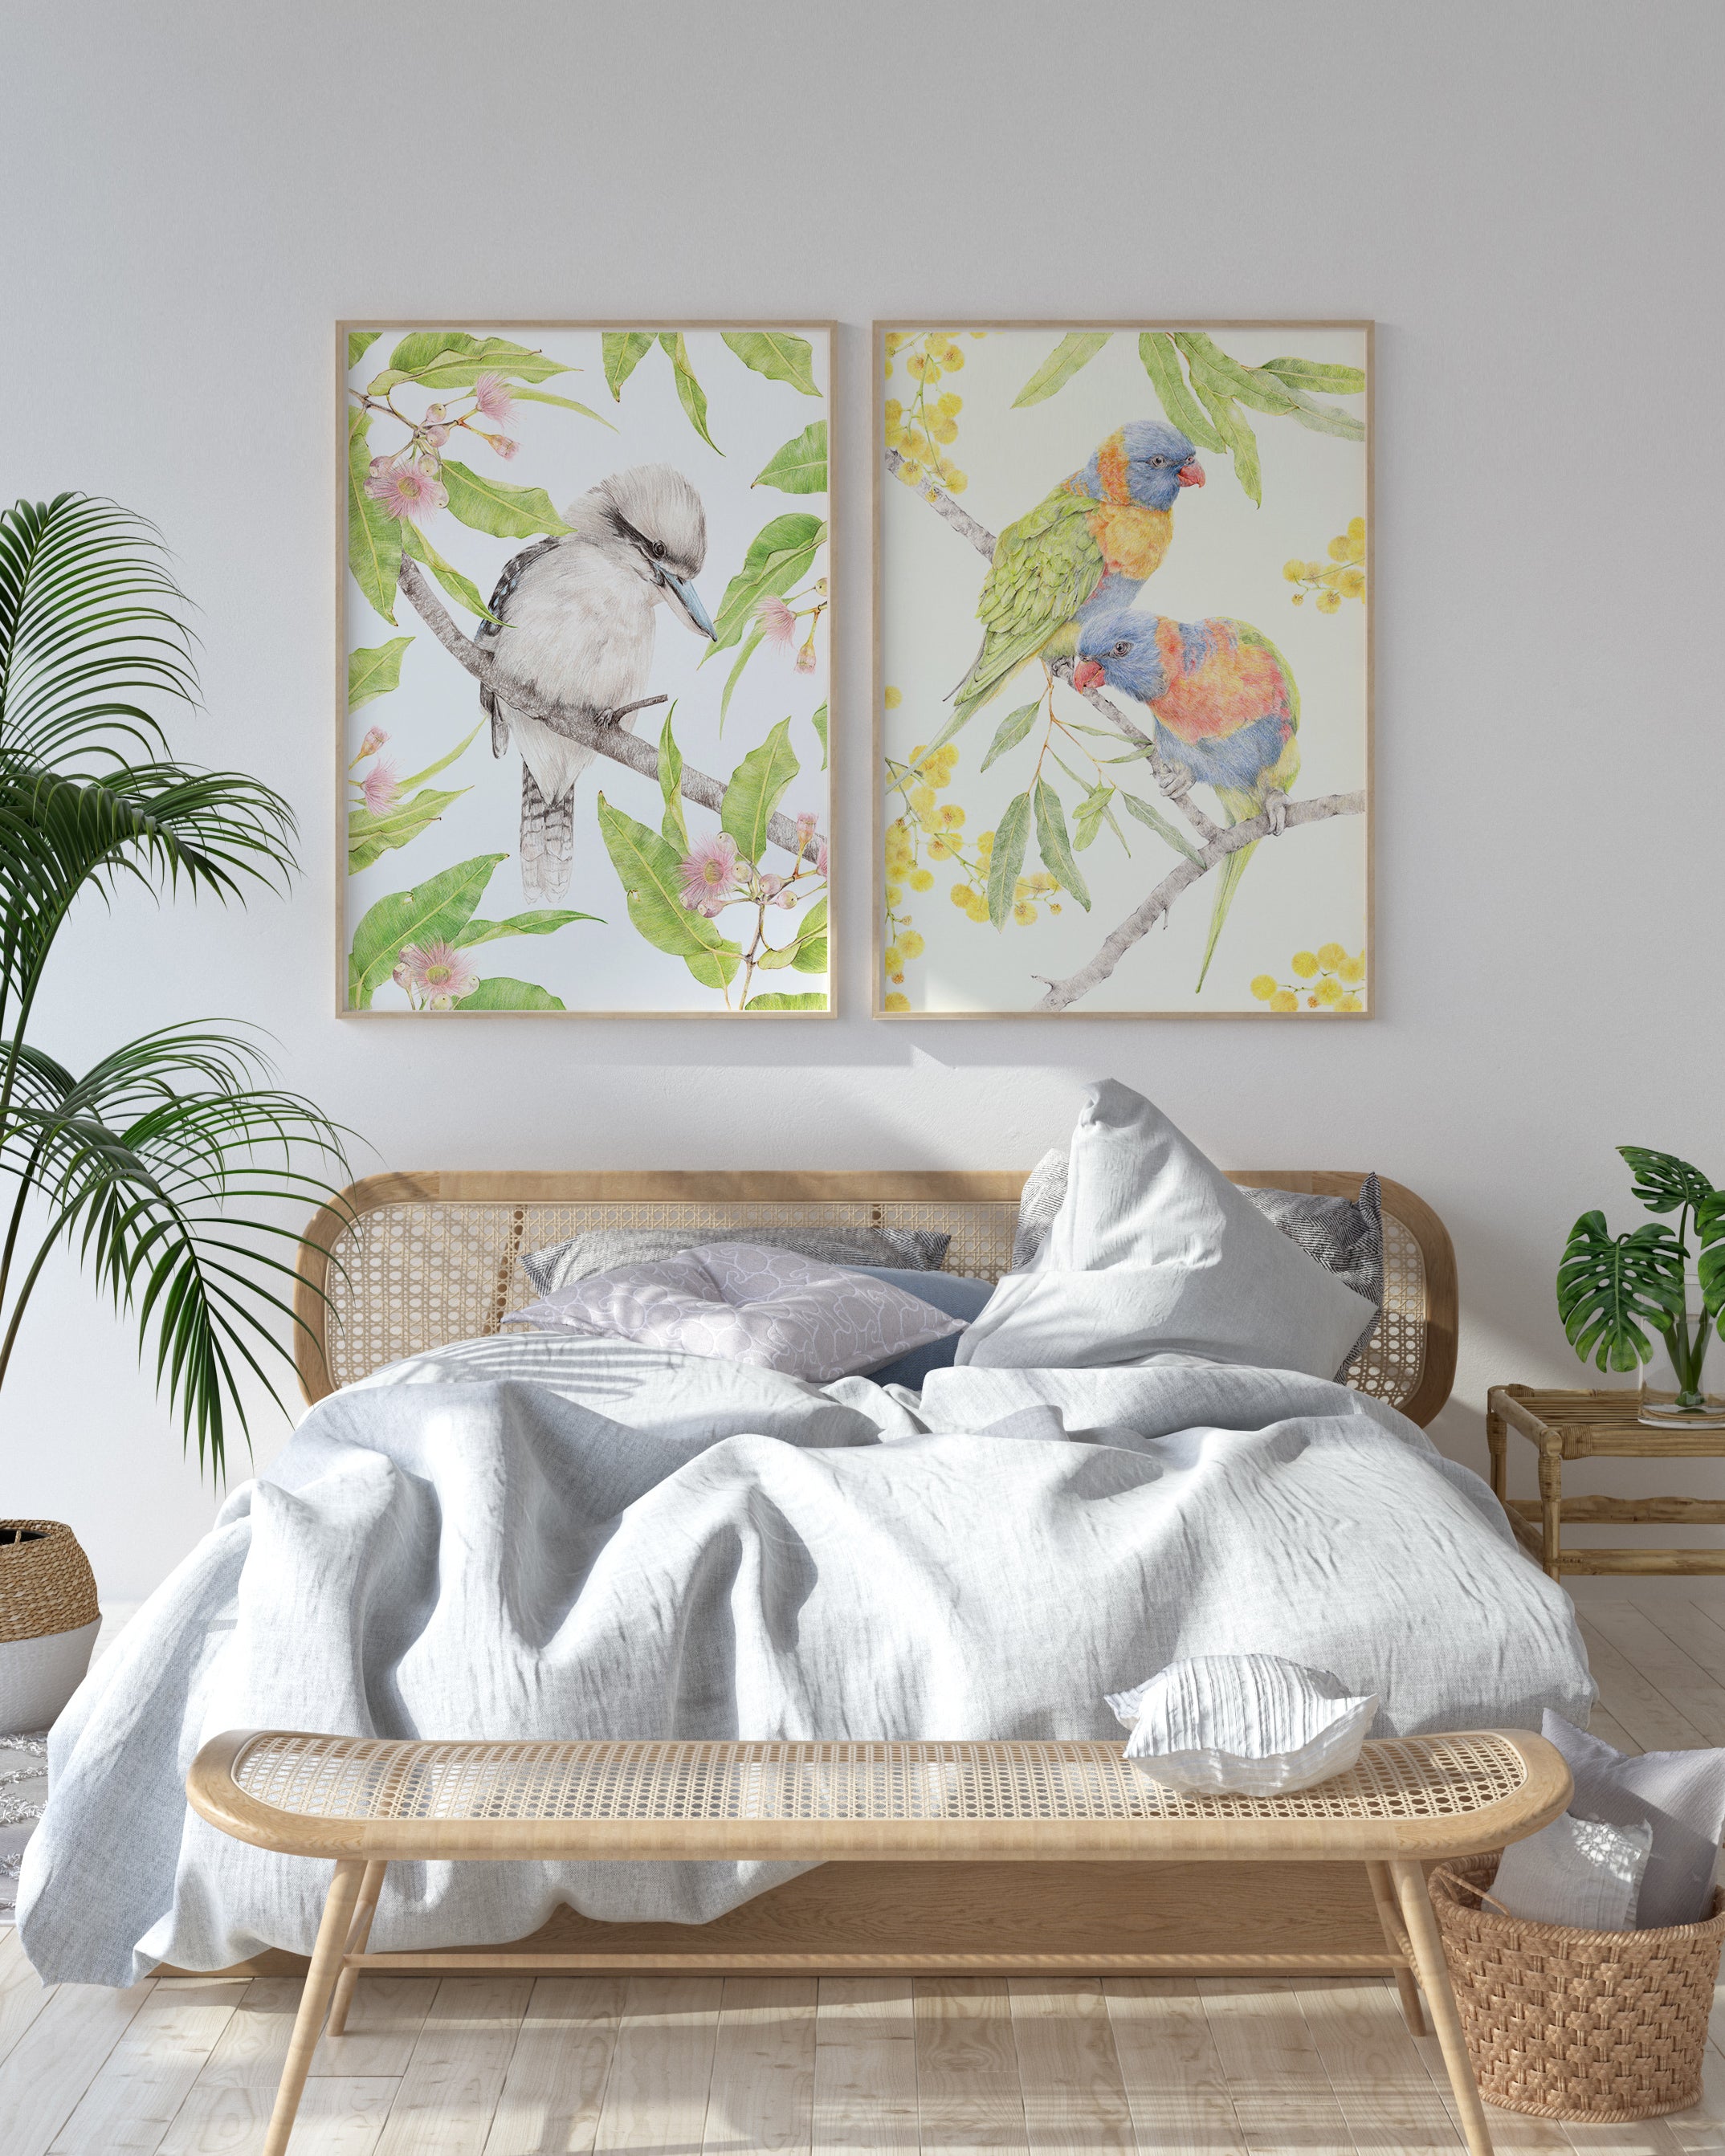 Bedroom art prints featuring Australian native birds